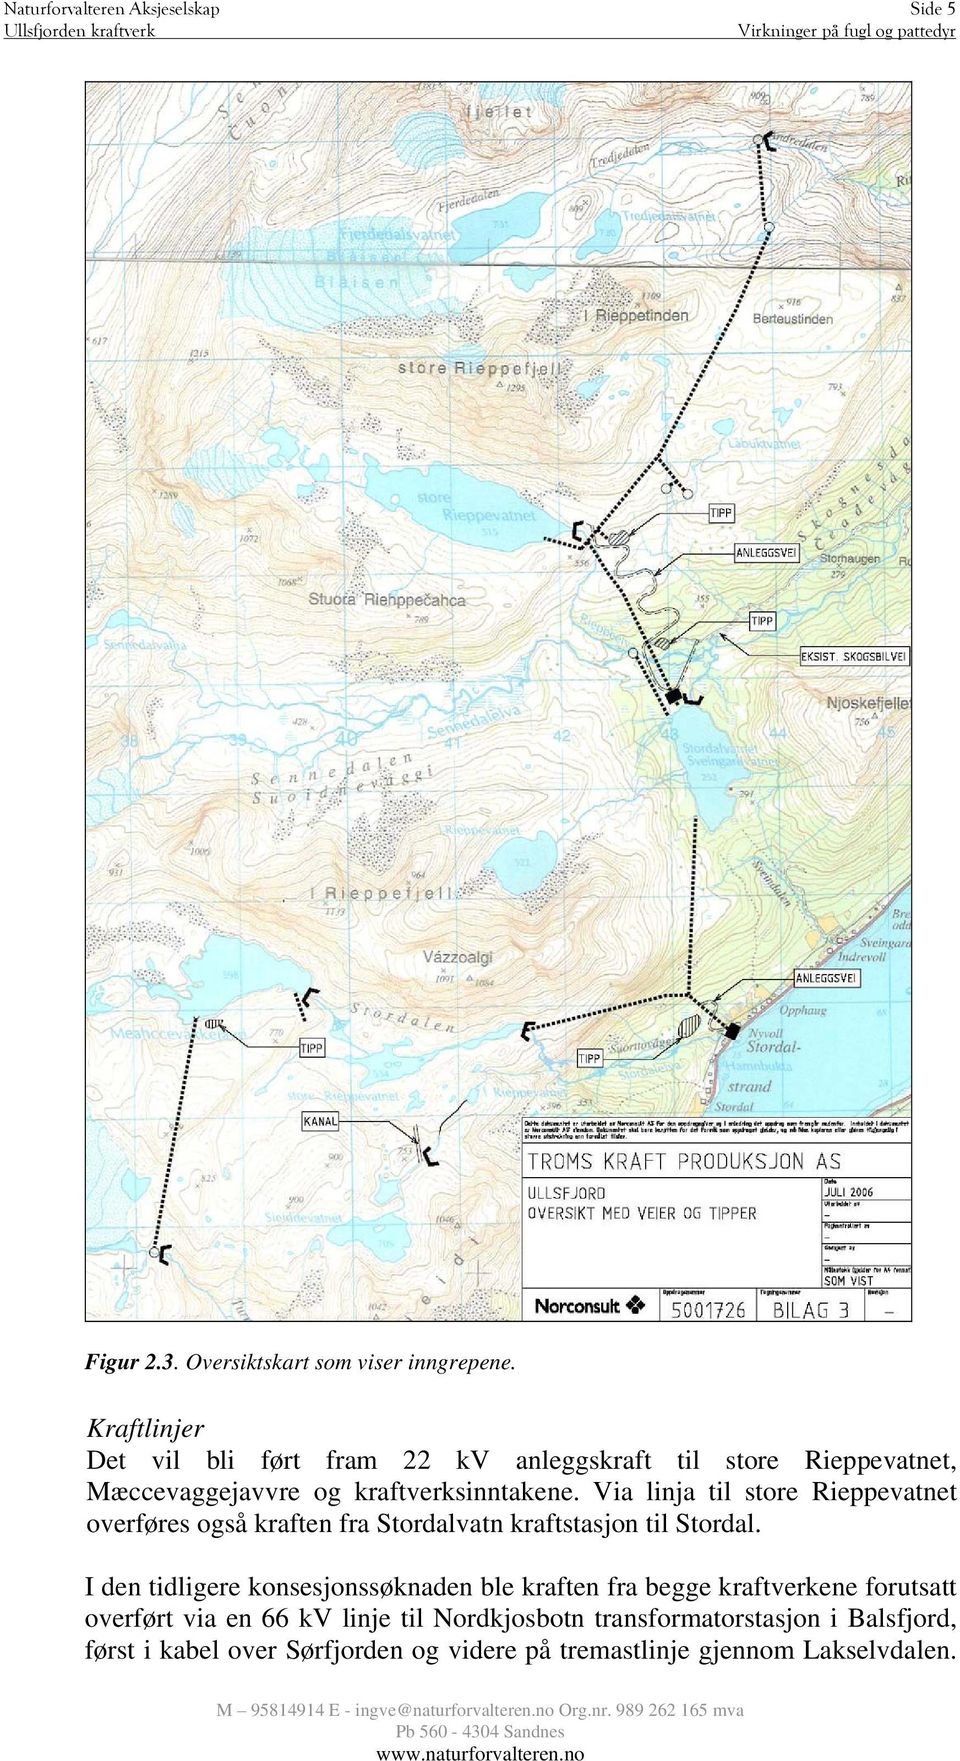 Via linja til store Rieppevatnet overføres også kraften fra Stordalvatn kraftstasjon til Stordal.